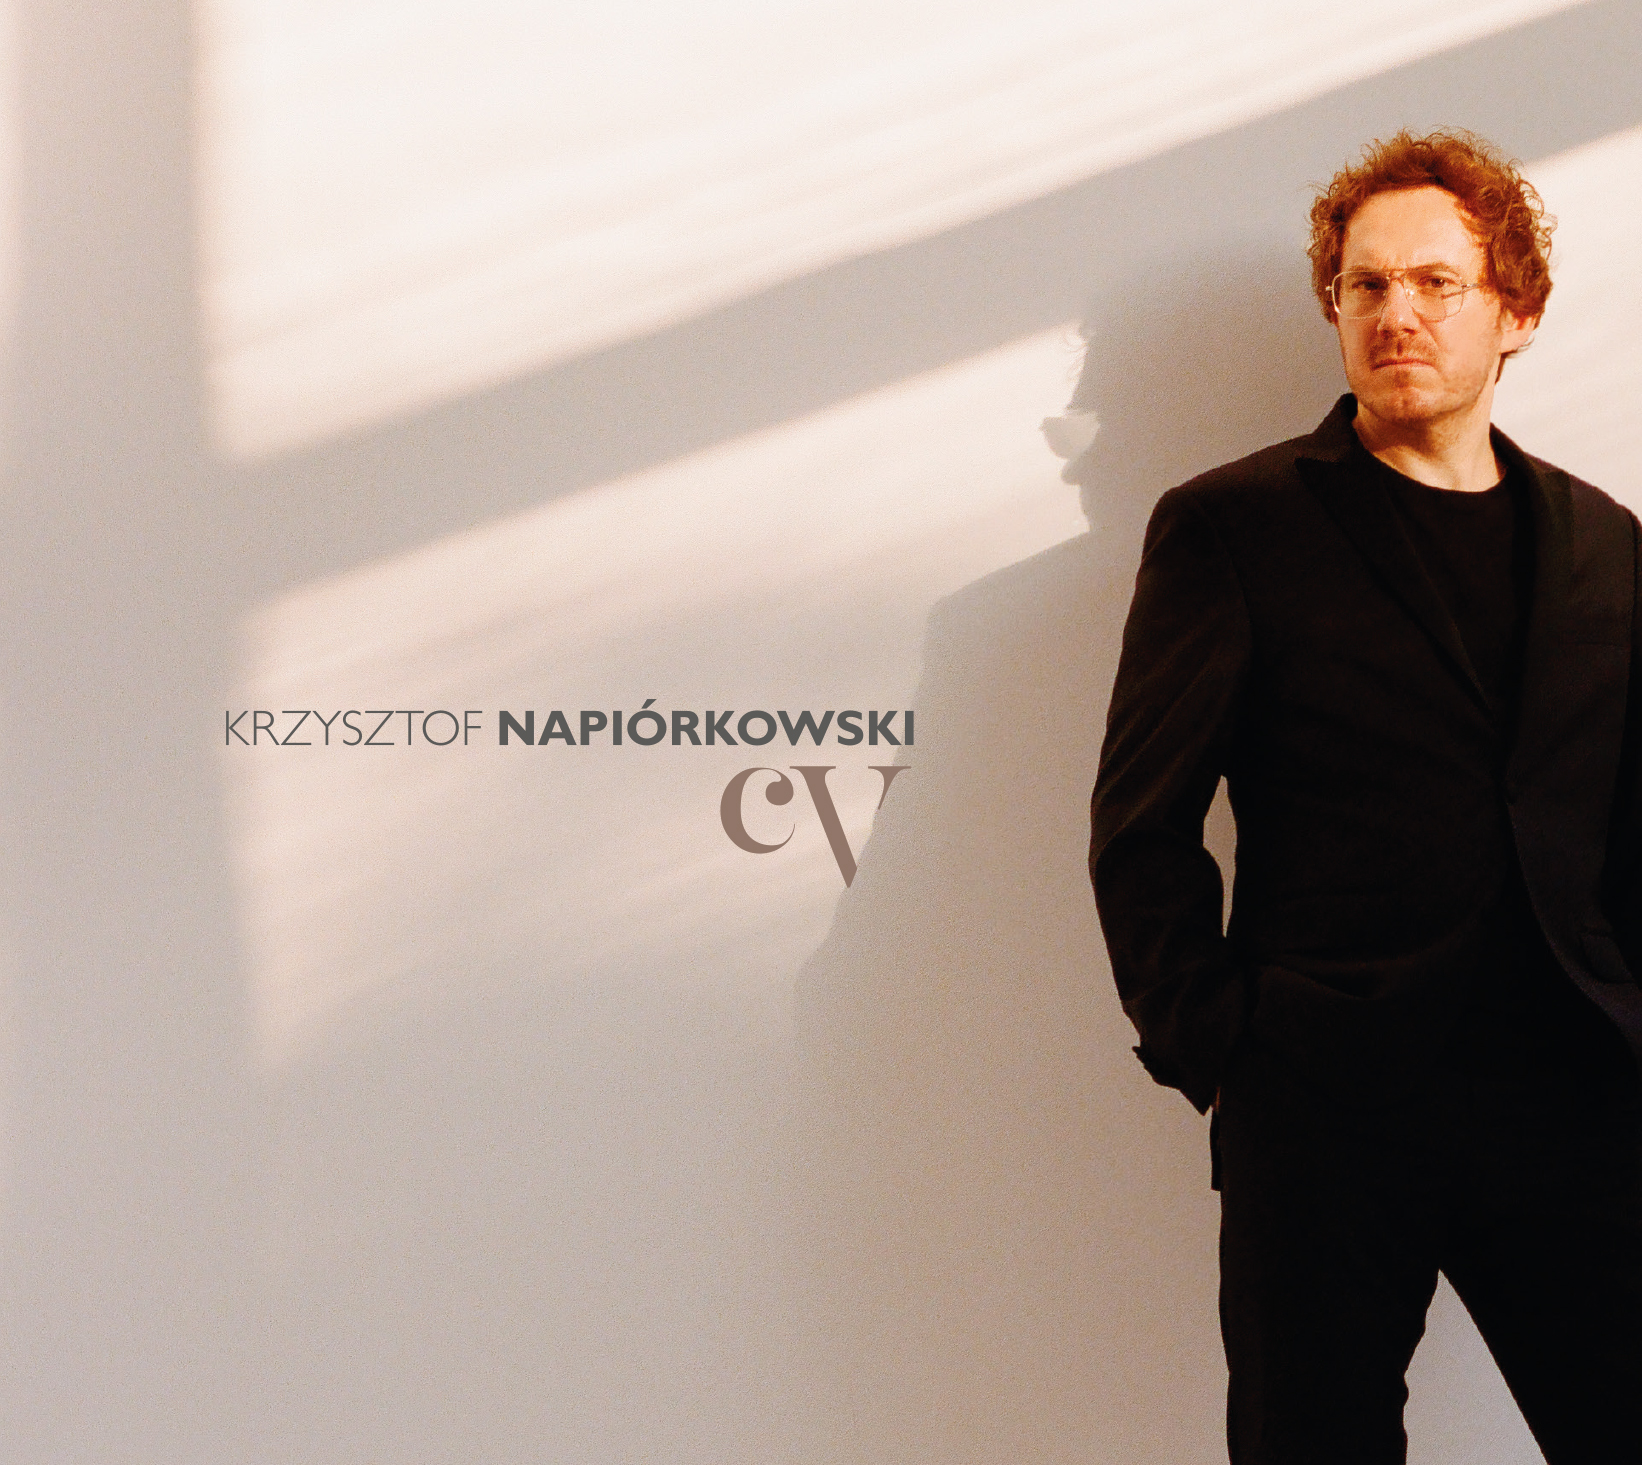 Krzysztof Napiórkowski KrzysztofNapiorkowski CV 2022 s20220102 cover rgb